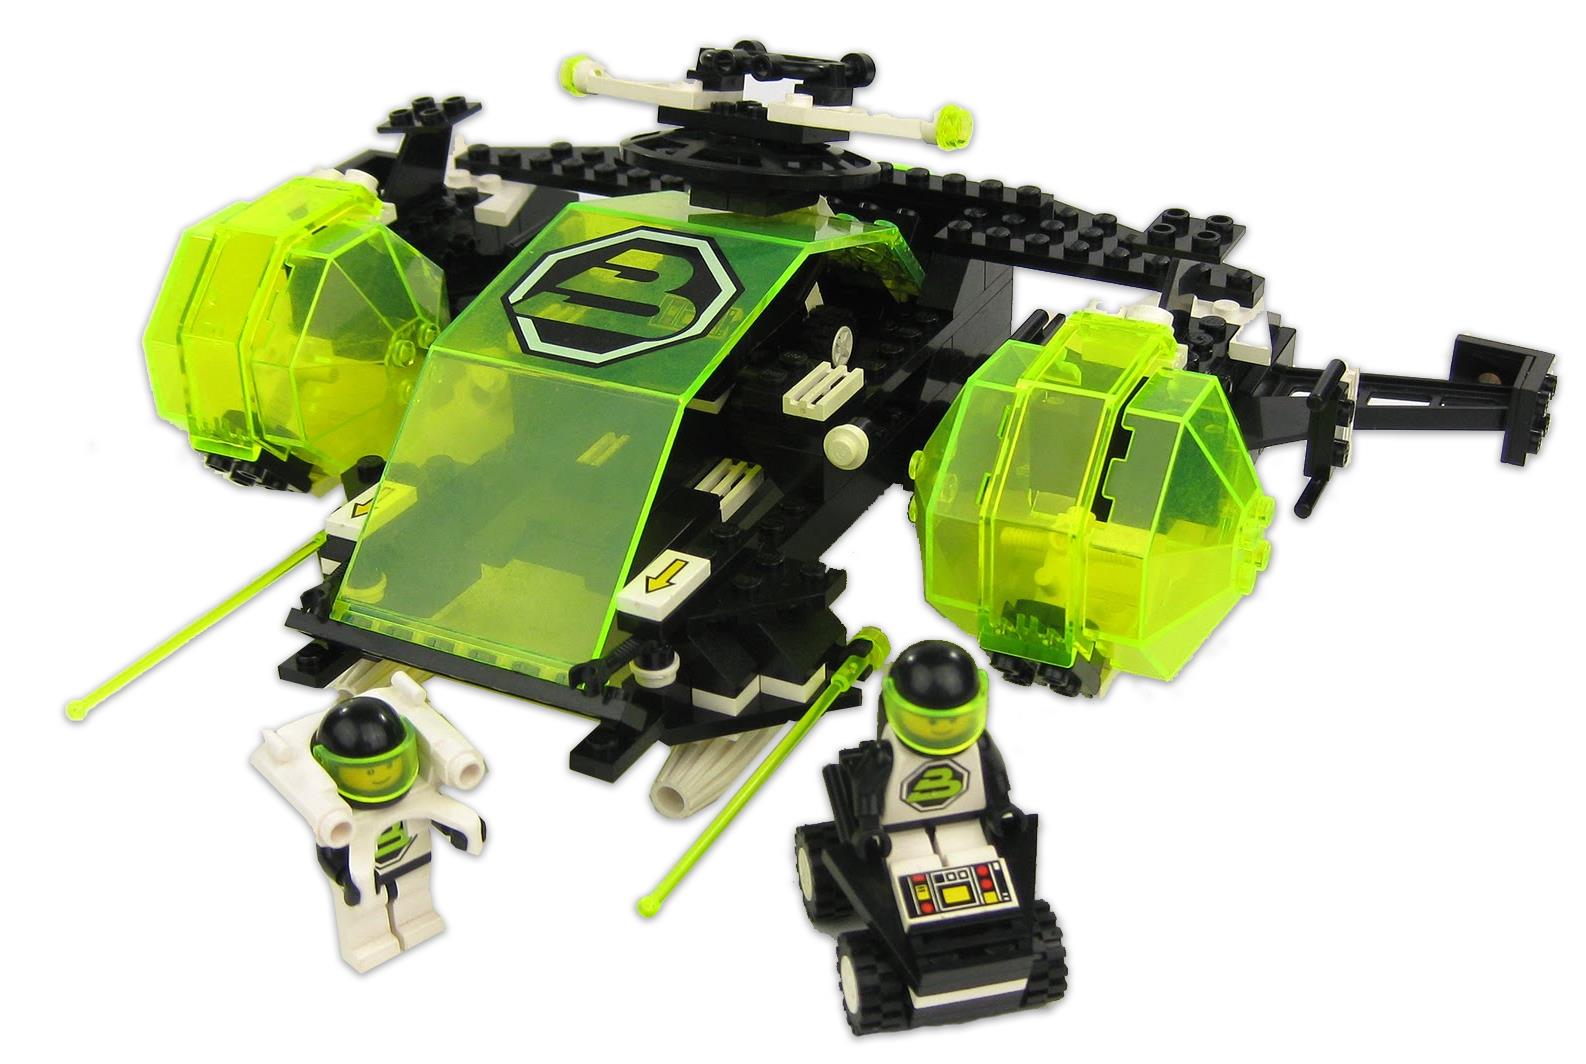 LEGO 6981 Blacktron 2 Aerial Intruder BrickEconomy